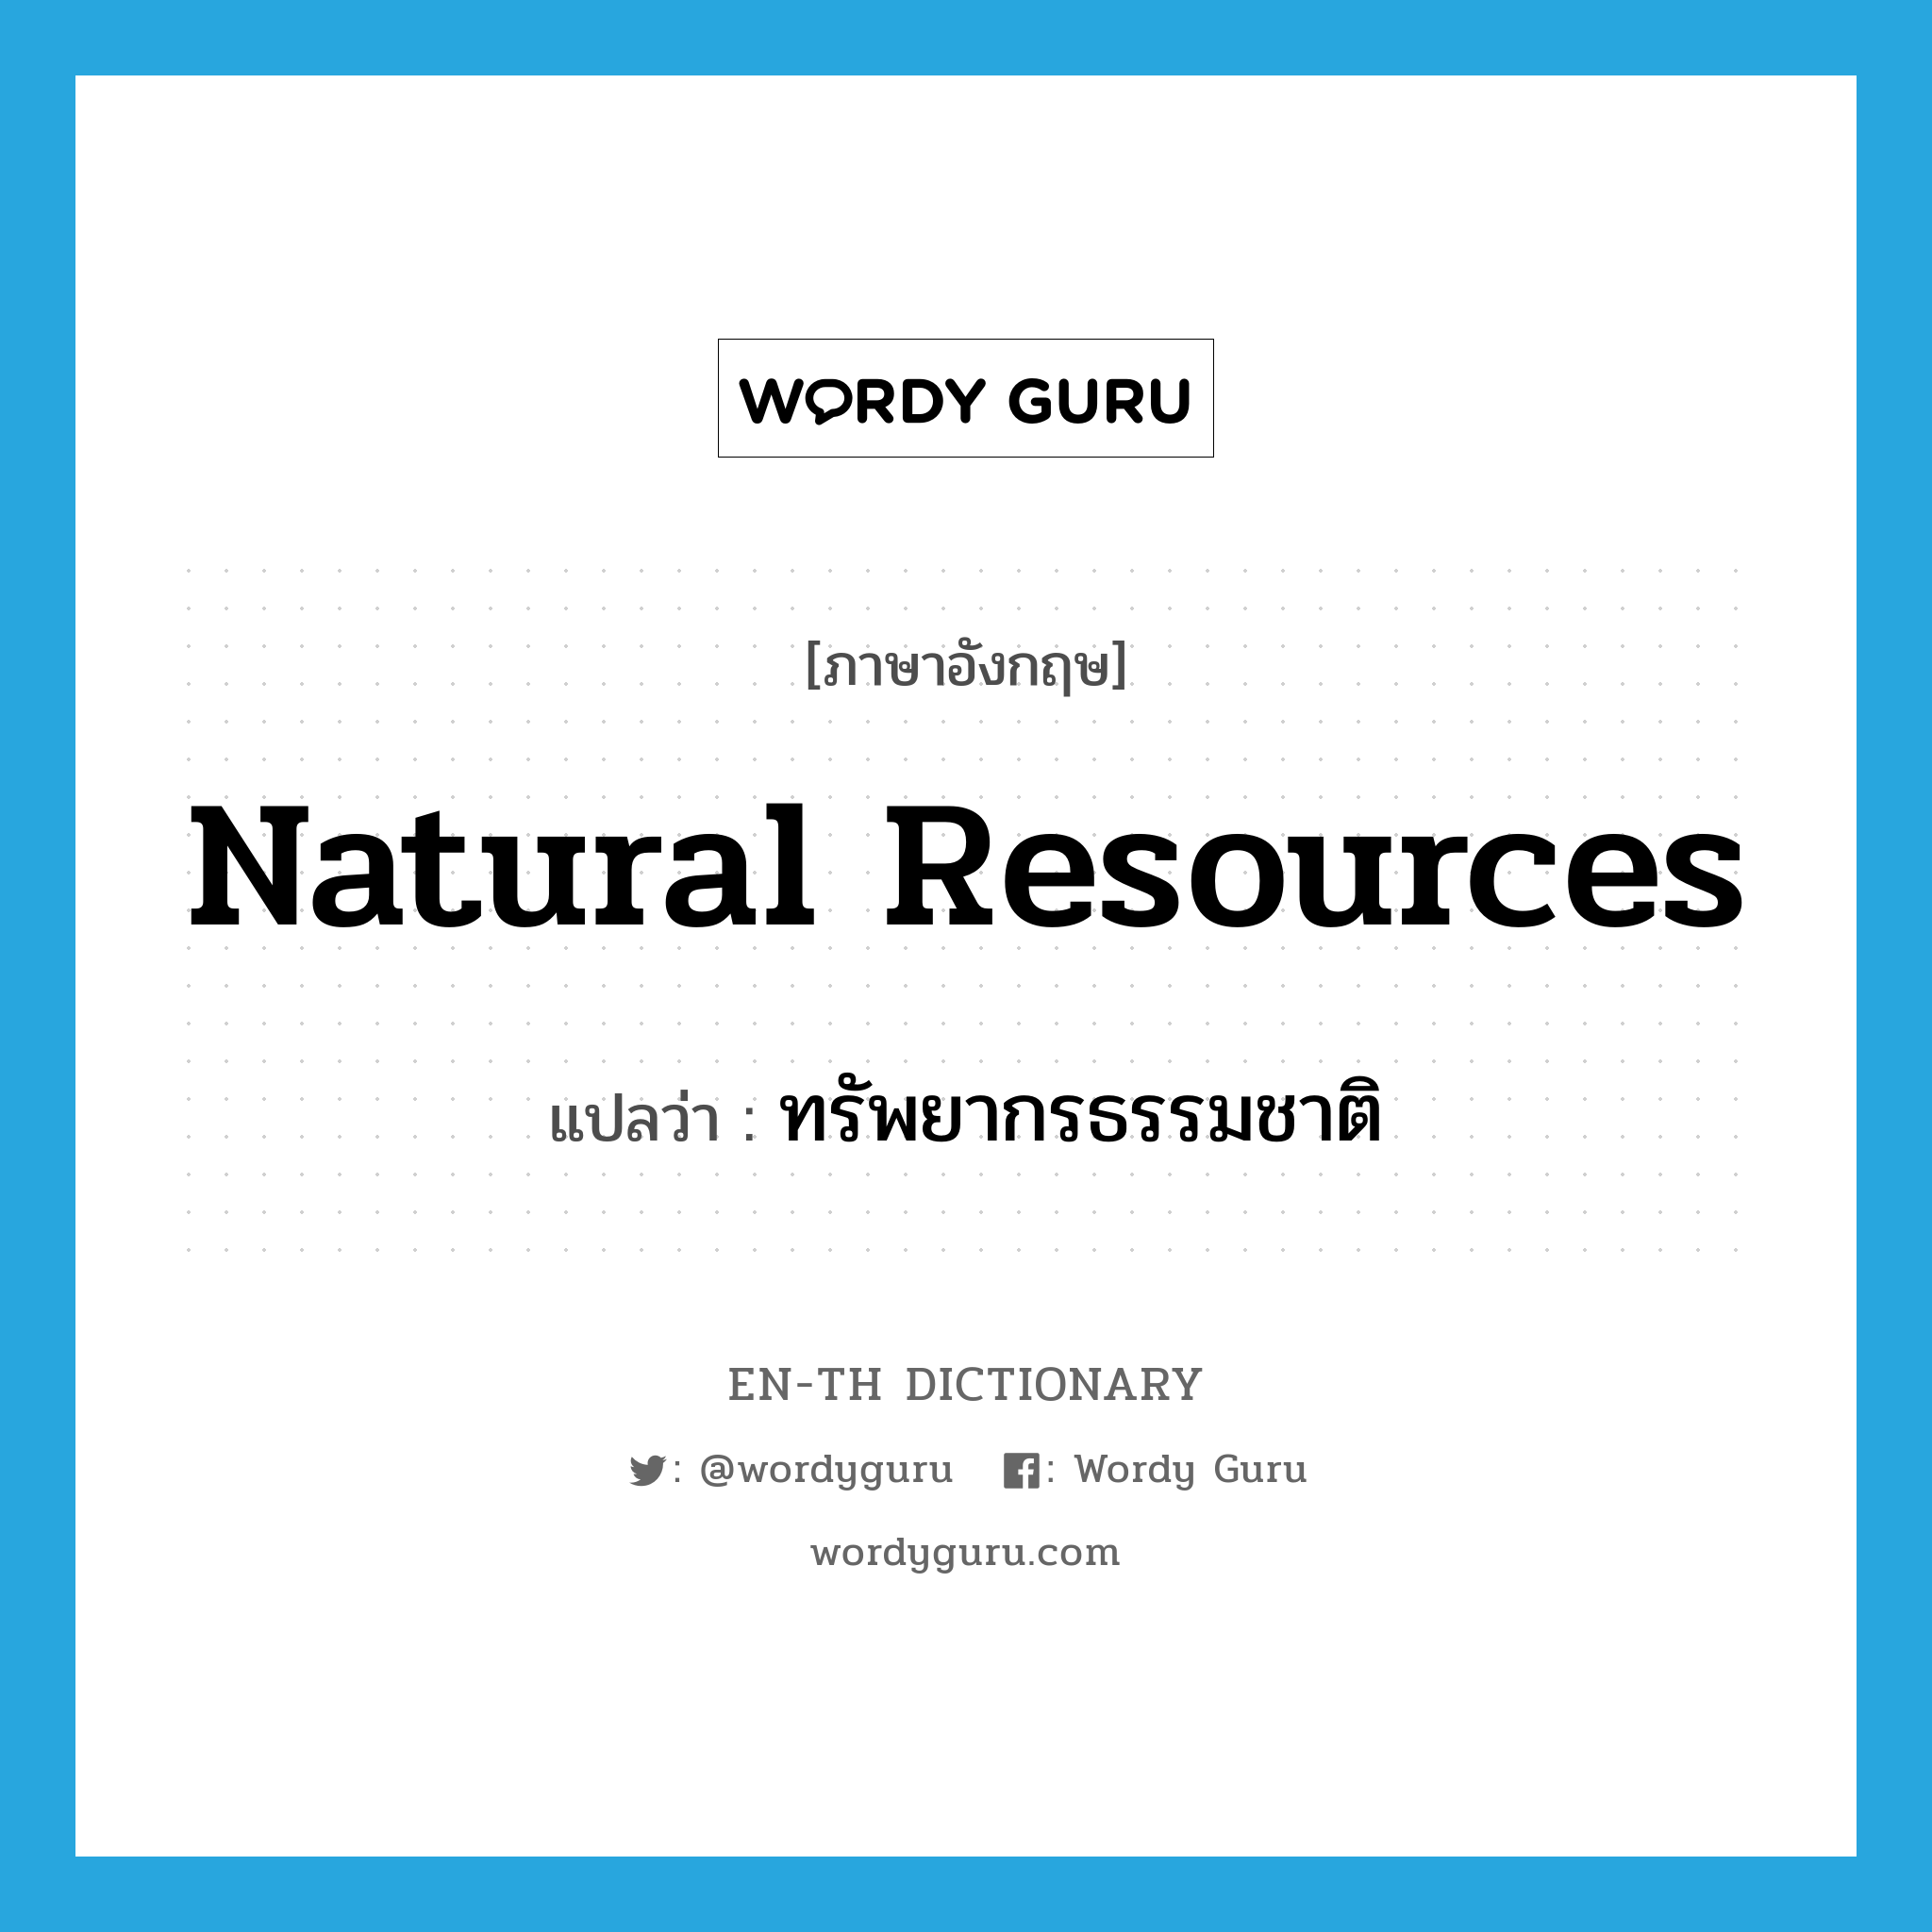 natural resources แปลว่า?, คำศัพท์ภาษาอังกฤษ natural resources แปลว่า ทรัพยากรธรรมชาติ ประเภท N หมวด N